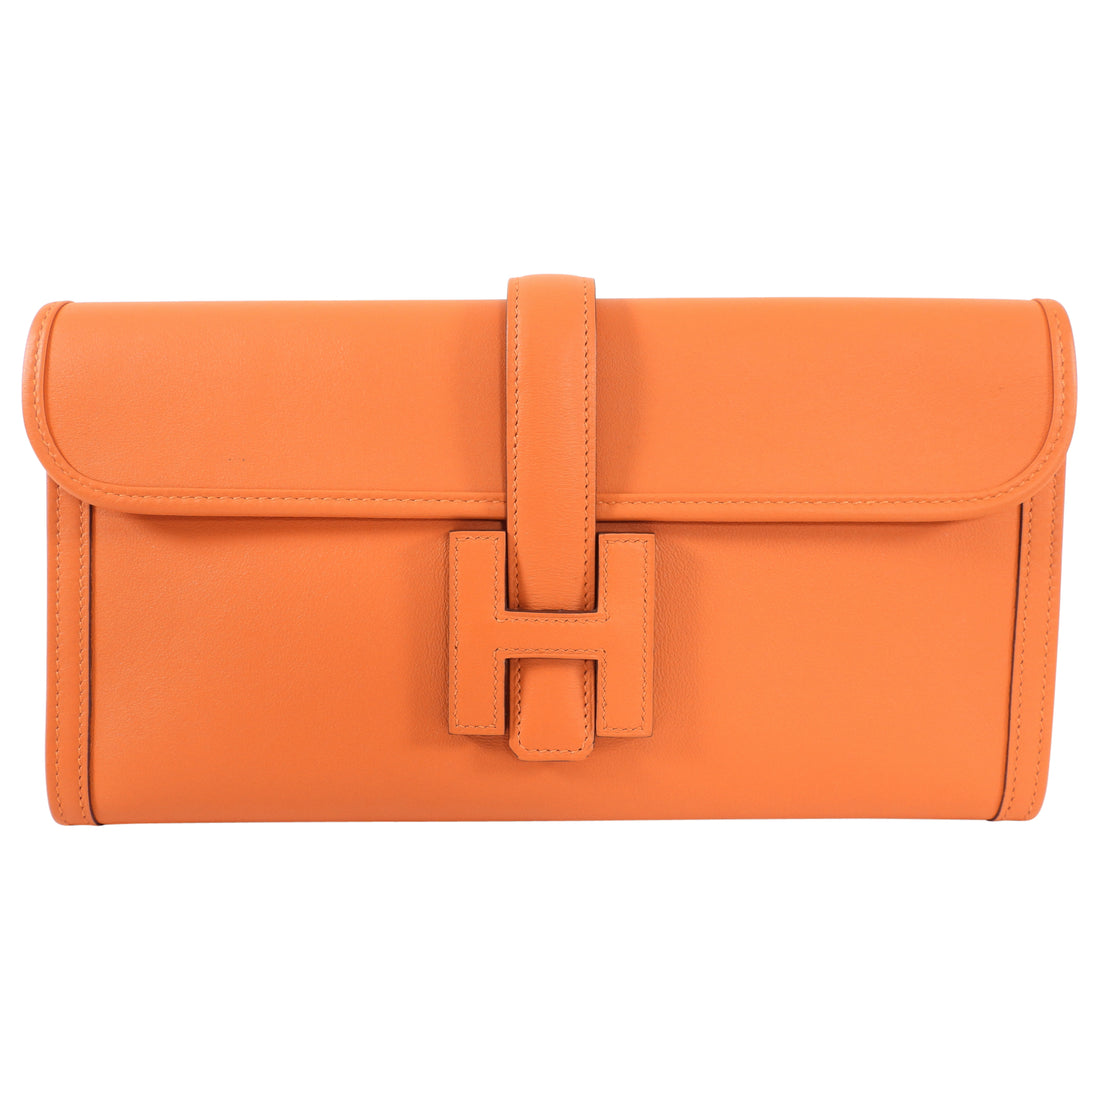 Hermes Orange Swift Jige Elan 29 Clutch Bag – I MISS YOU VINTAGE